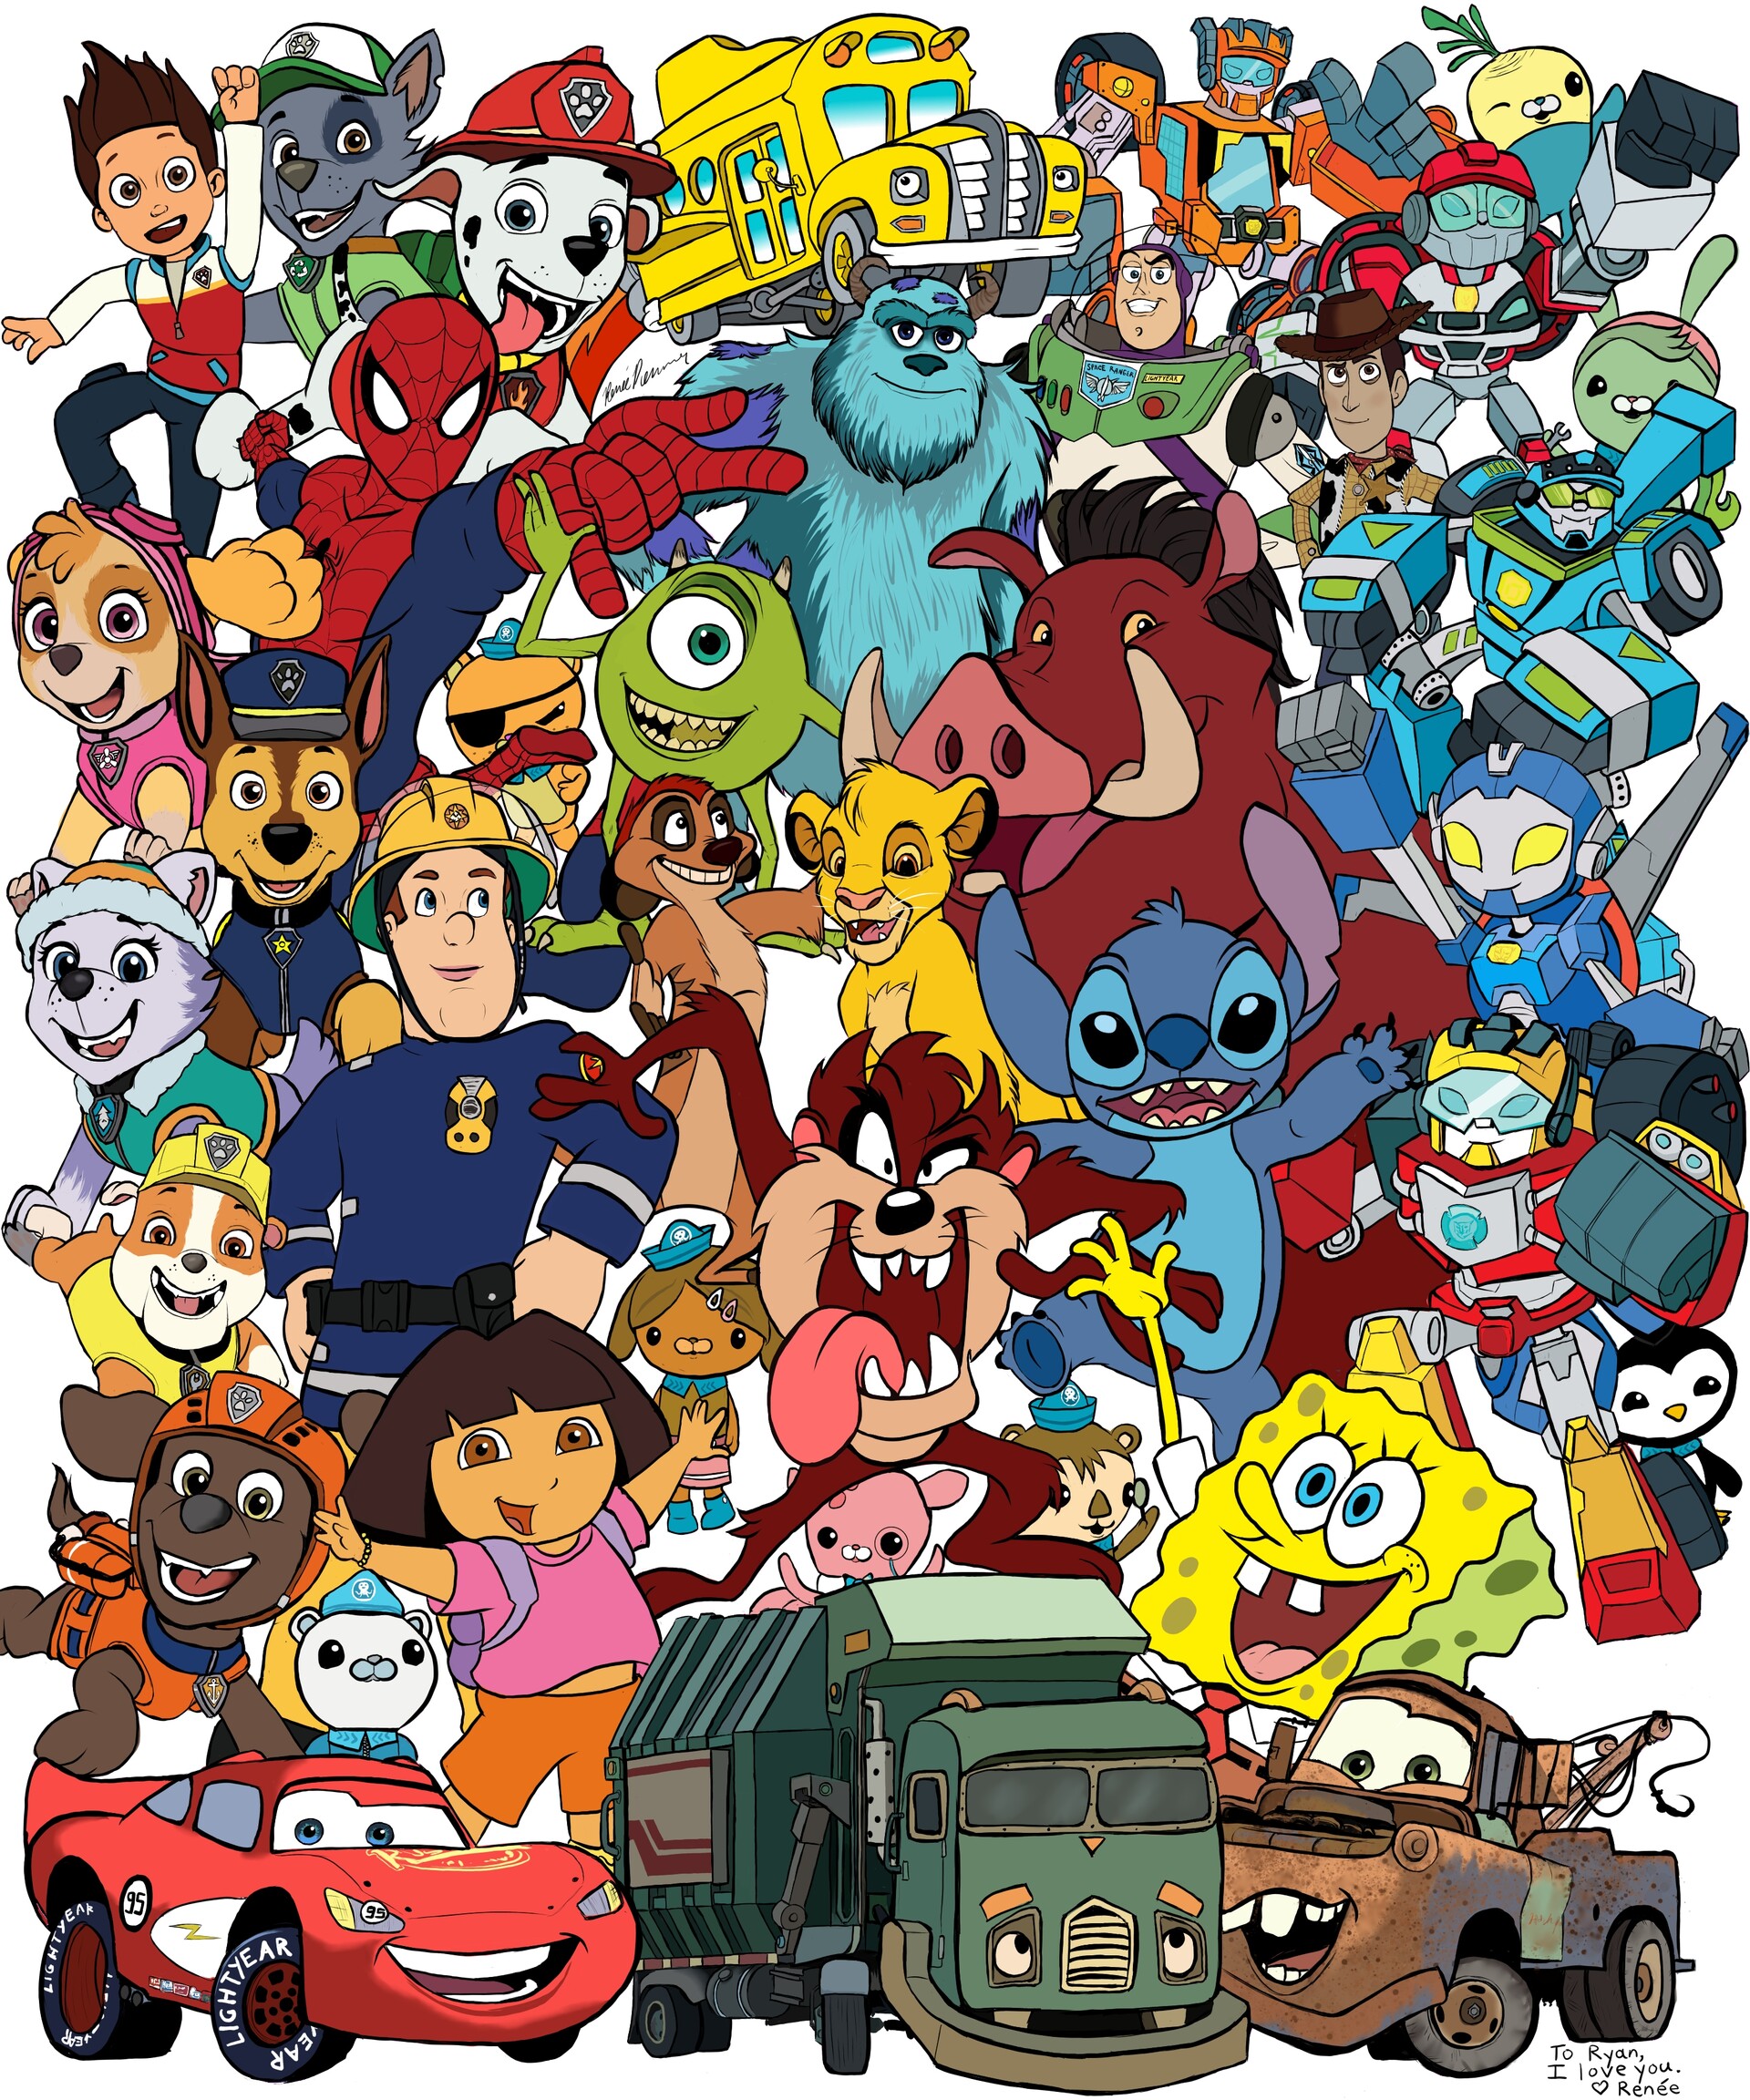 ArtStation - 2020 Cartoon Collection